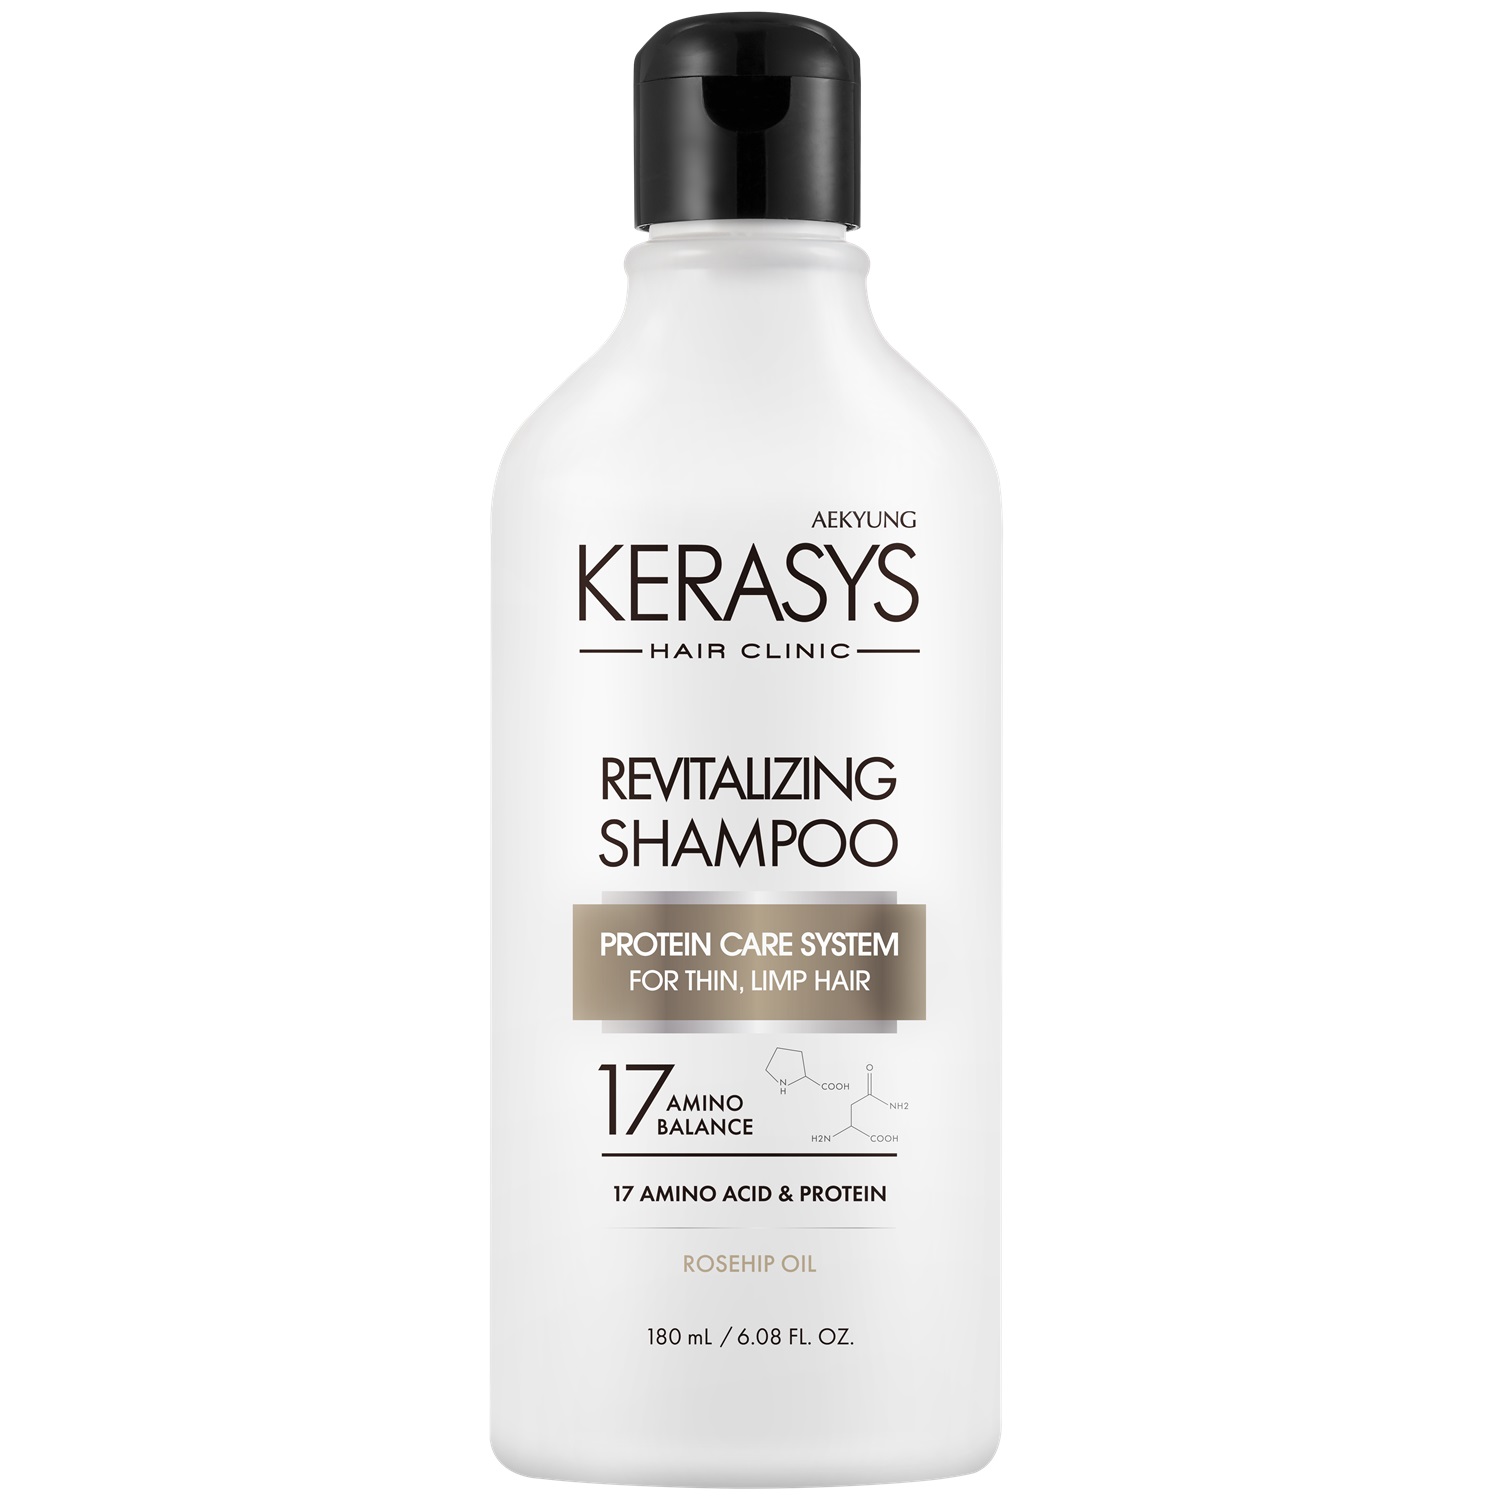 Kerasys Шампунь оздоравливающий для волос, 180 мл (Kerasys, Hair Clinic) kerasys шампунь для волос восстанавливающий запасной блок 500 мл kerasys hair clinic